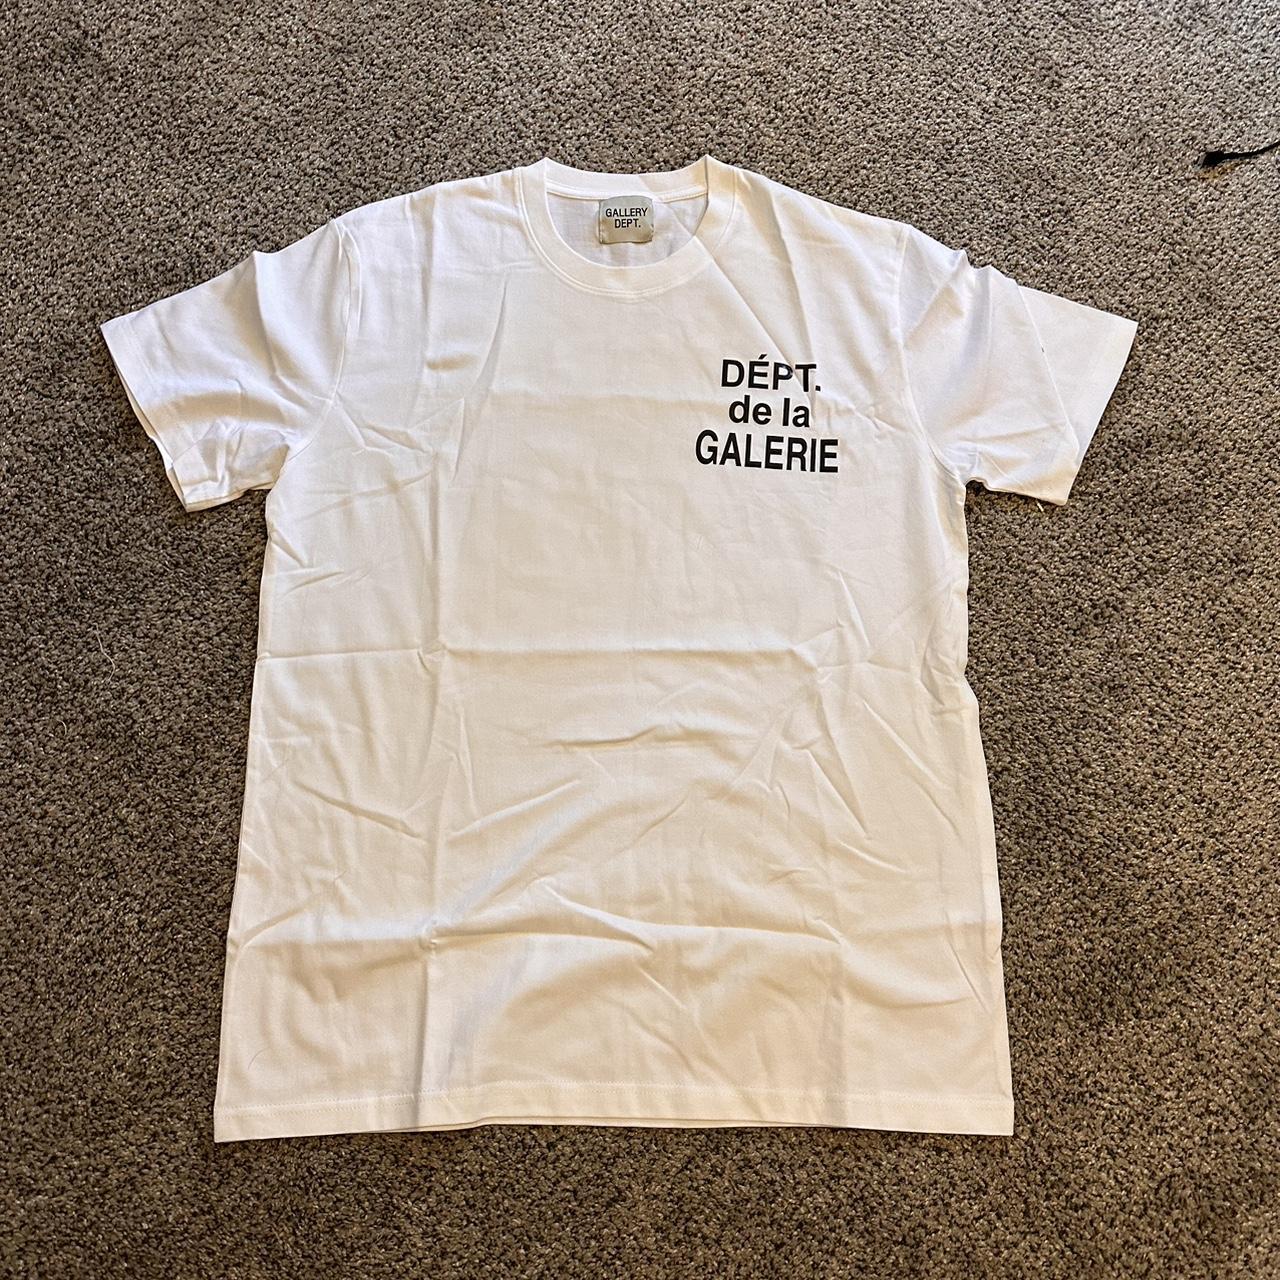 Gallery Dept. Men's White T-shirt | Depop